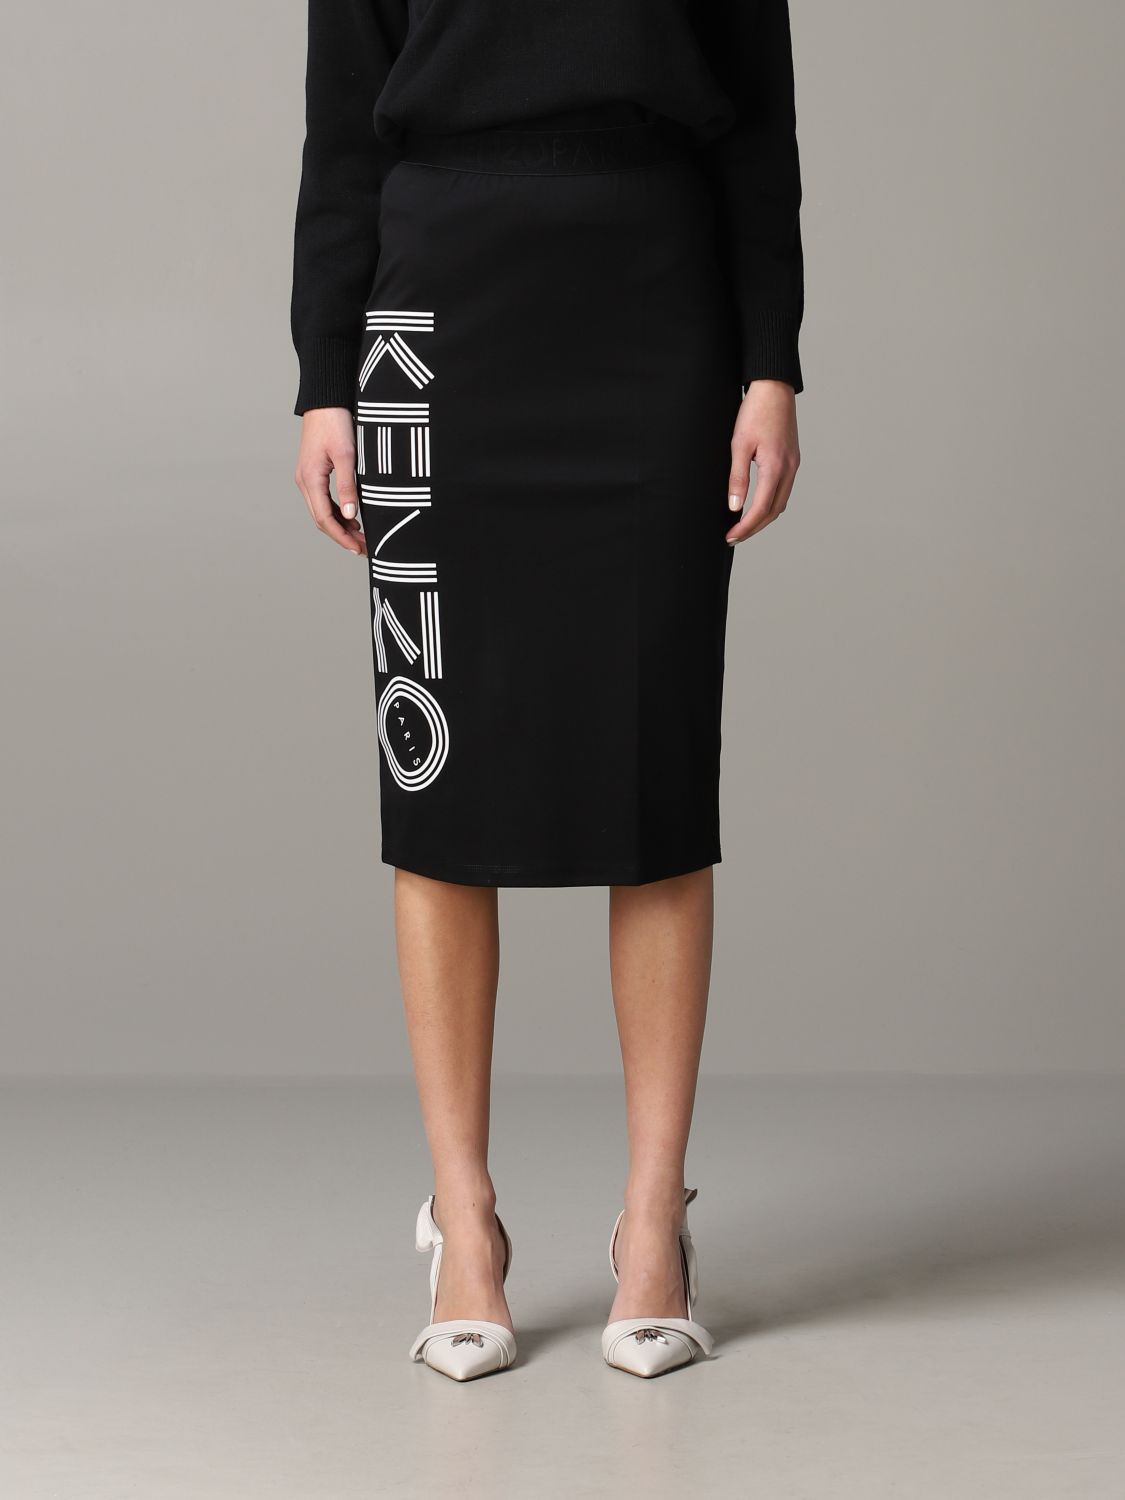 わせるとと】 KENZO - kenzo スカート 黒 グレーの通販 by uu's shop 